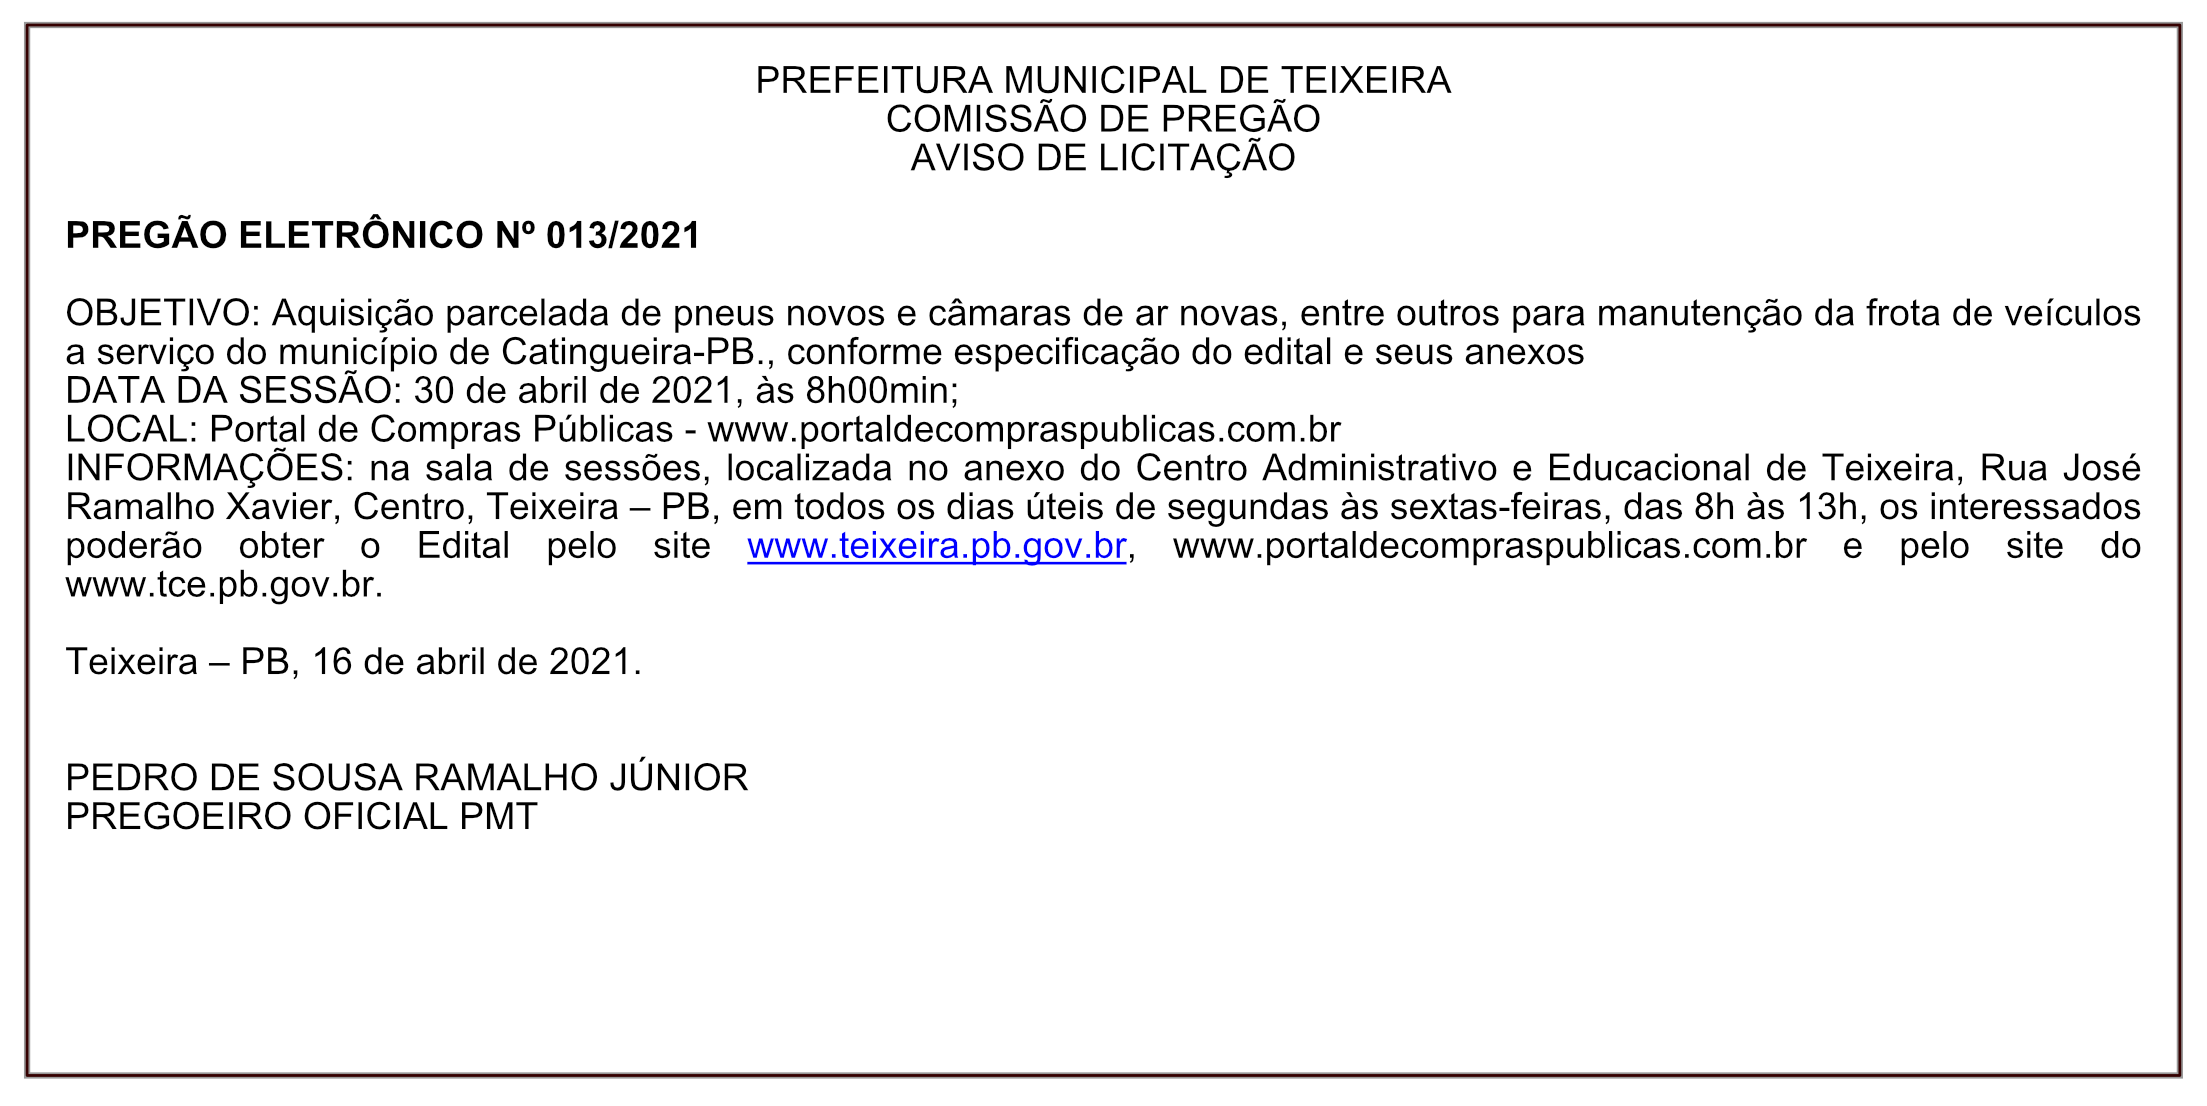 PREFEITURA MUNICIPAL DE TEIXEIRA – COMISSÃO DE PREGÃO – AVISO DE LICITAÇÃO – PREGÃO ELETRÔNICO Nº 013/2021